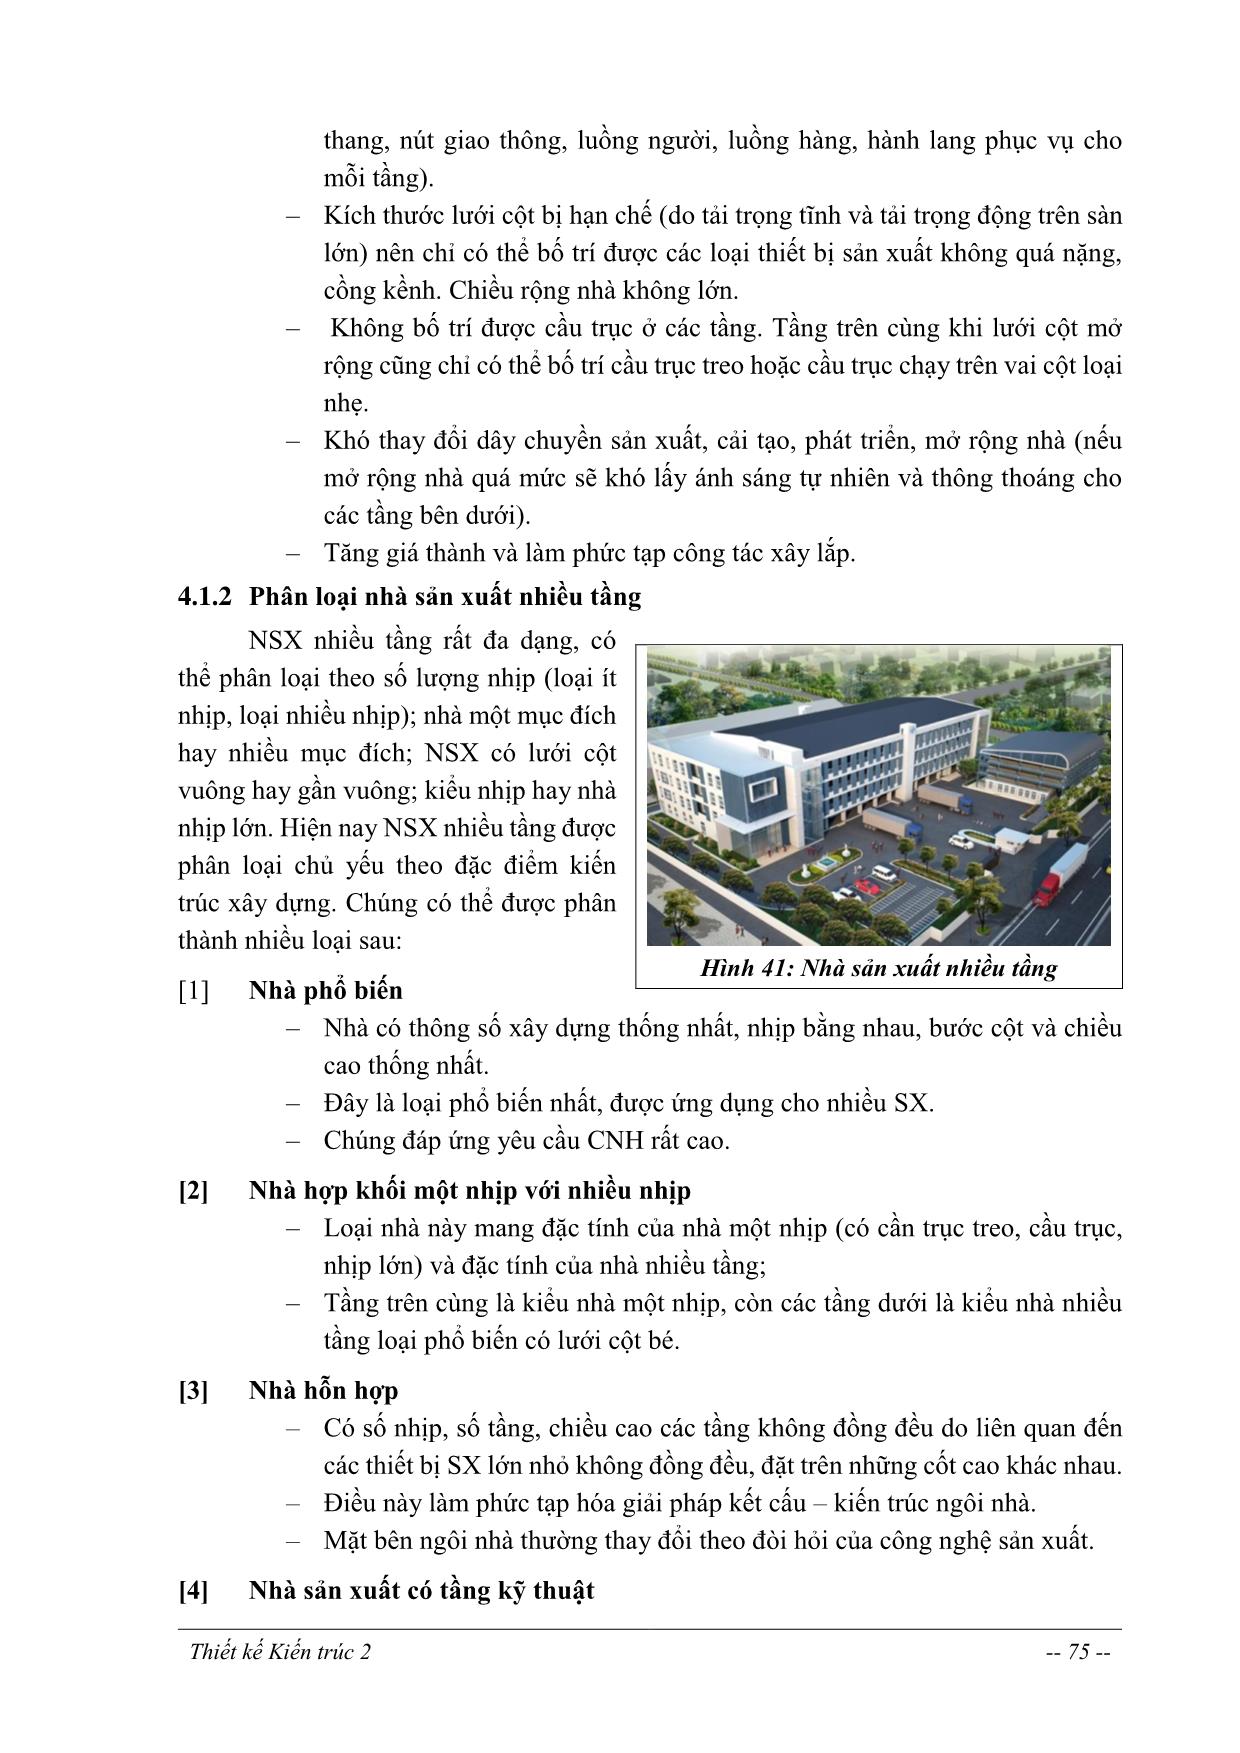 Giáo trình Thiết kế kiến trúc 2 - Chương 4: Thiết kế nhà sản xuất nhiều tầng trang 2